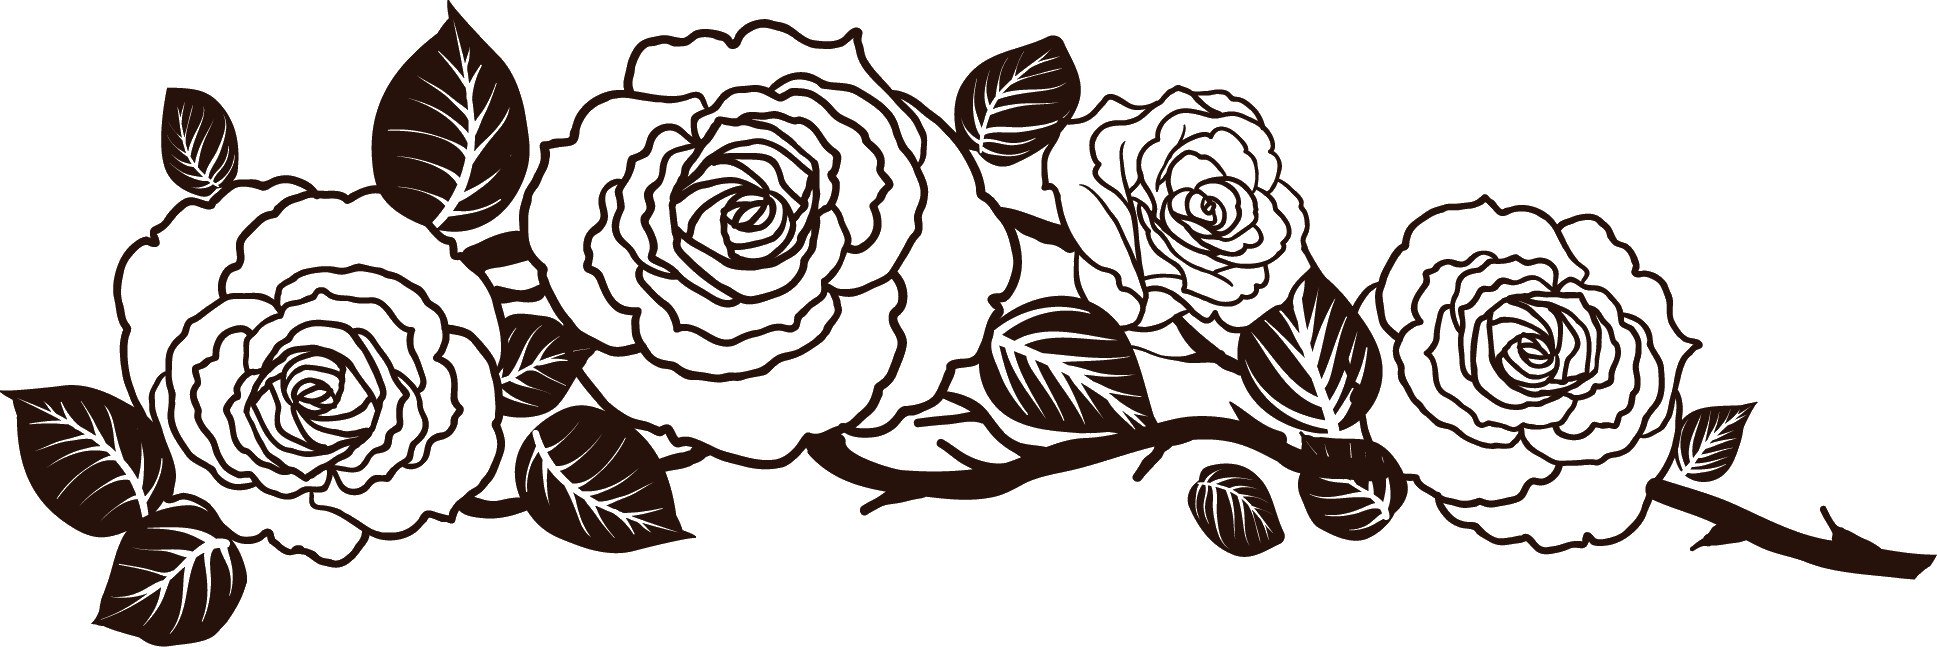 寄せ書きデザイン イラスト素材 バラの花と茨